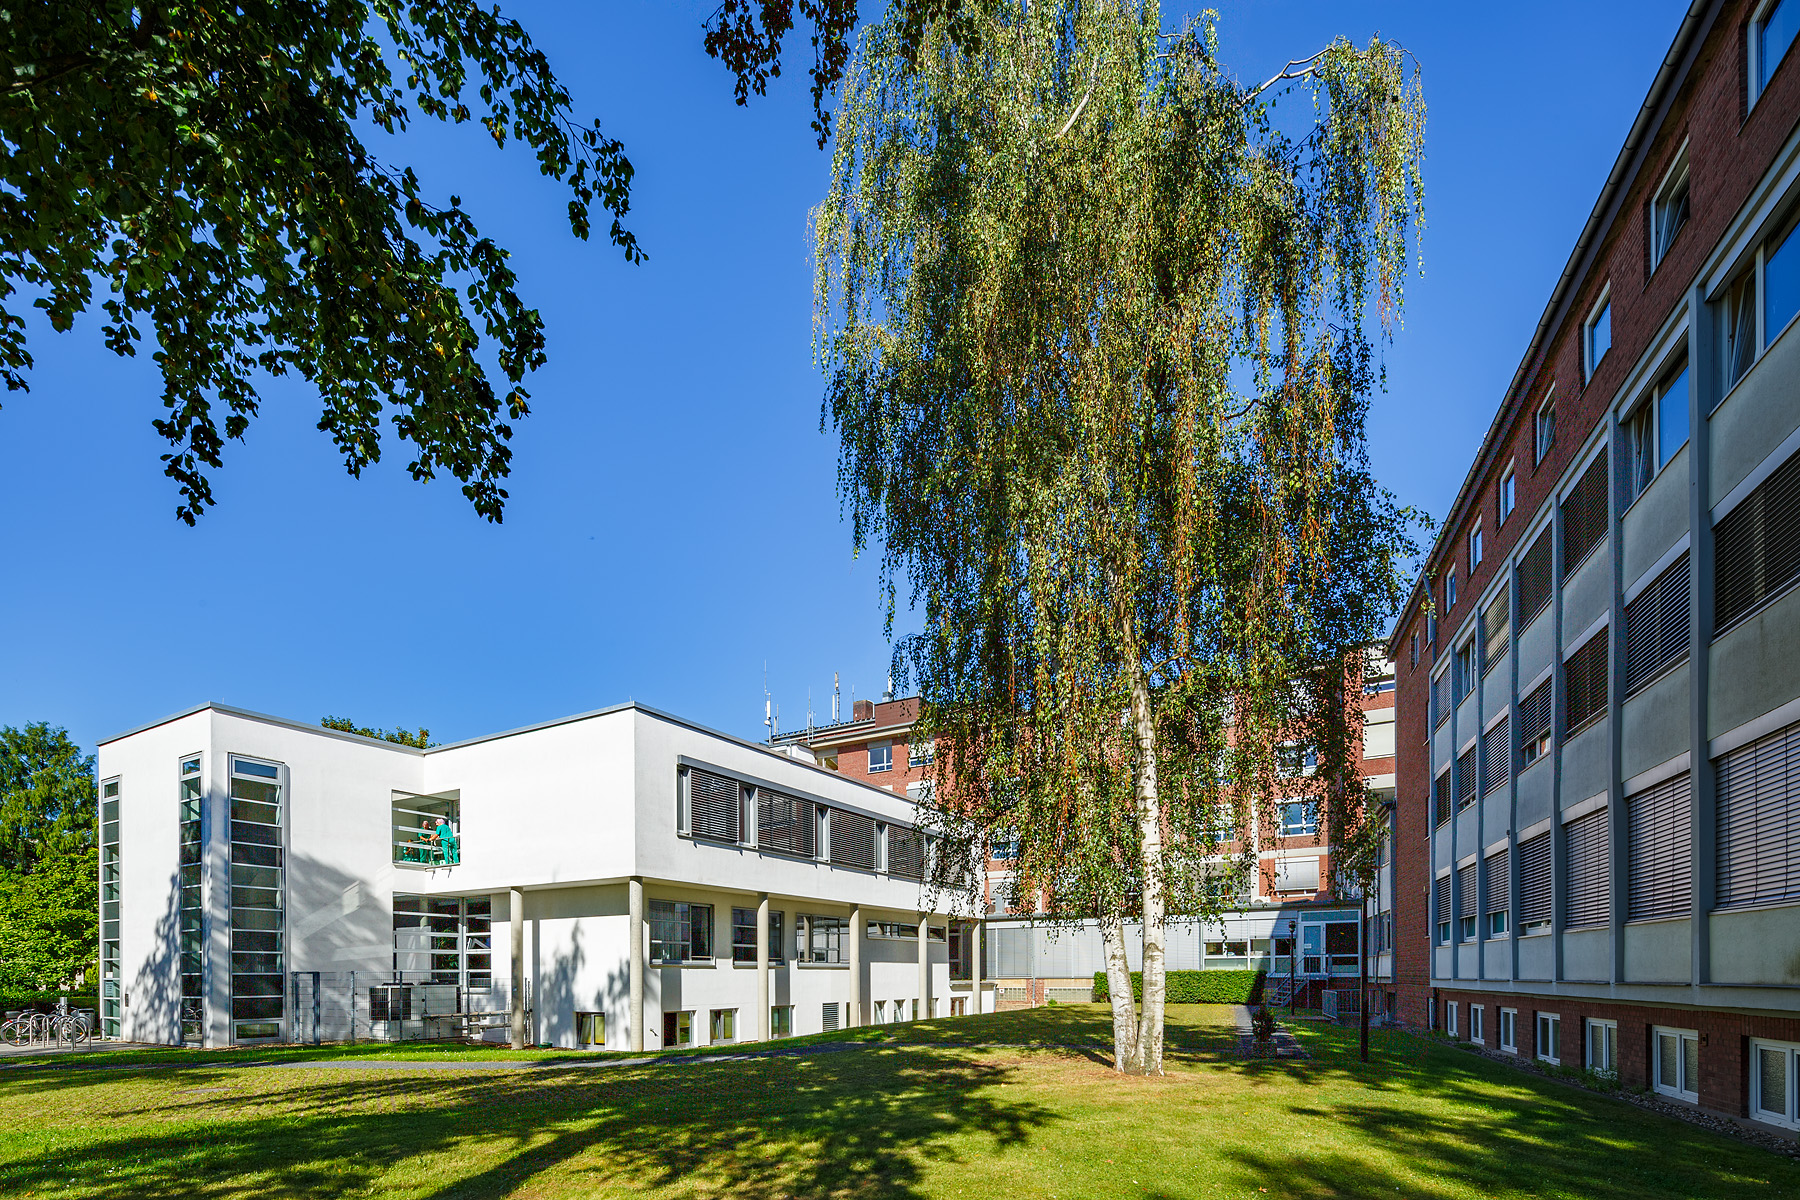 Das Maria-Hilf-Krankenhaus in Bergheim von außen bei sonnigem Wetter